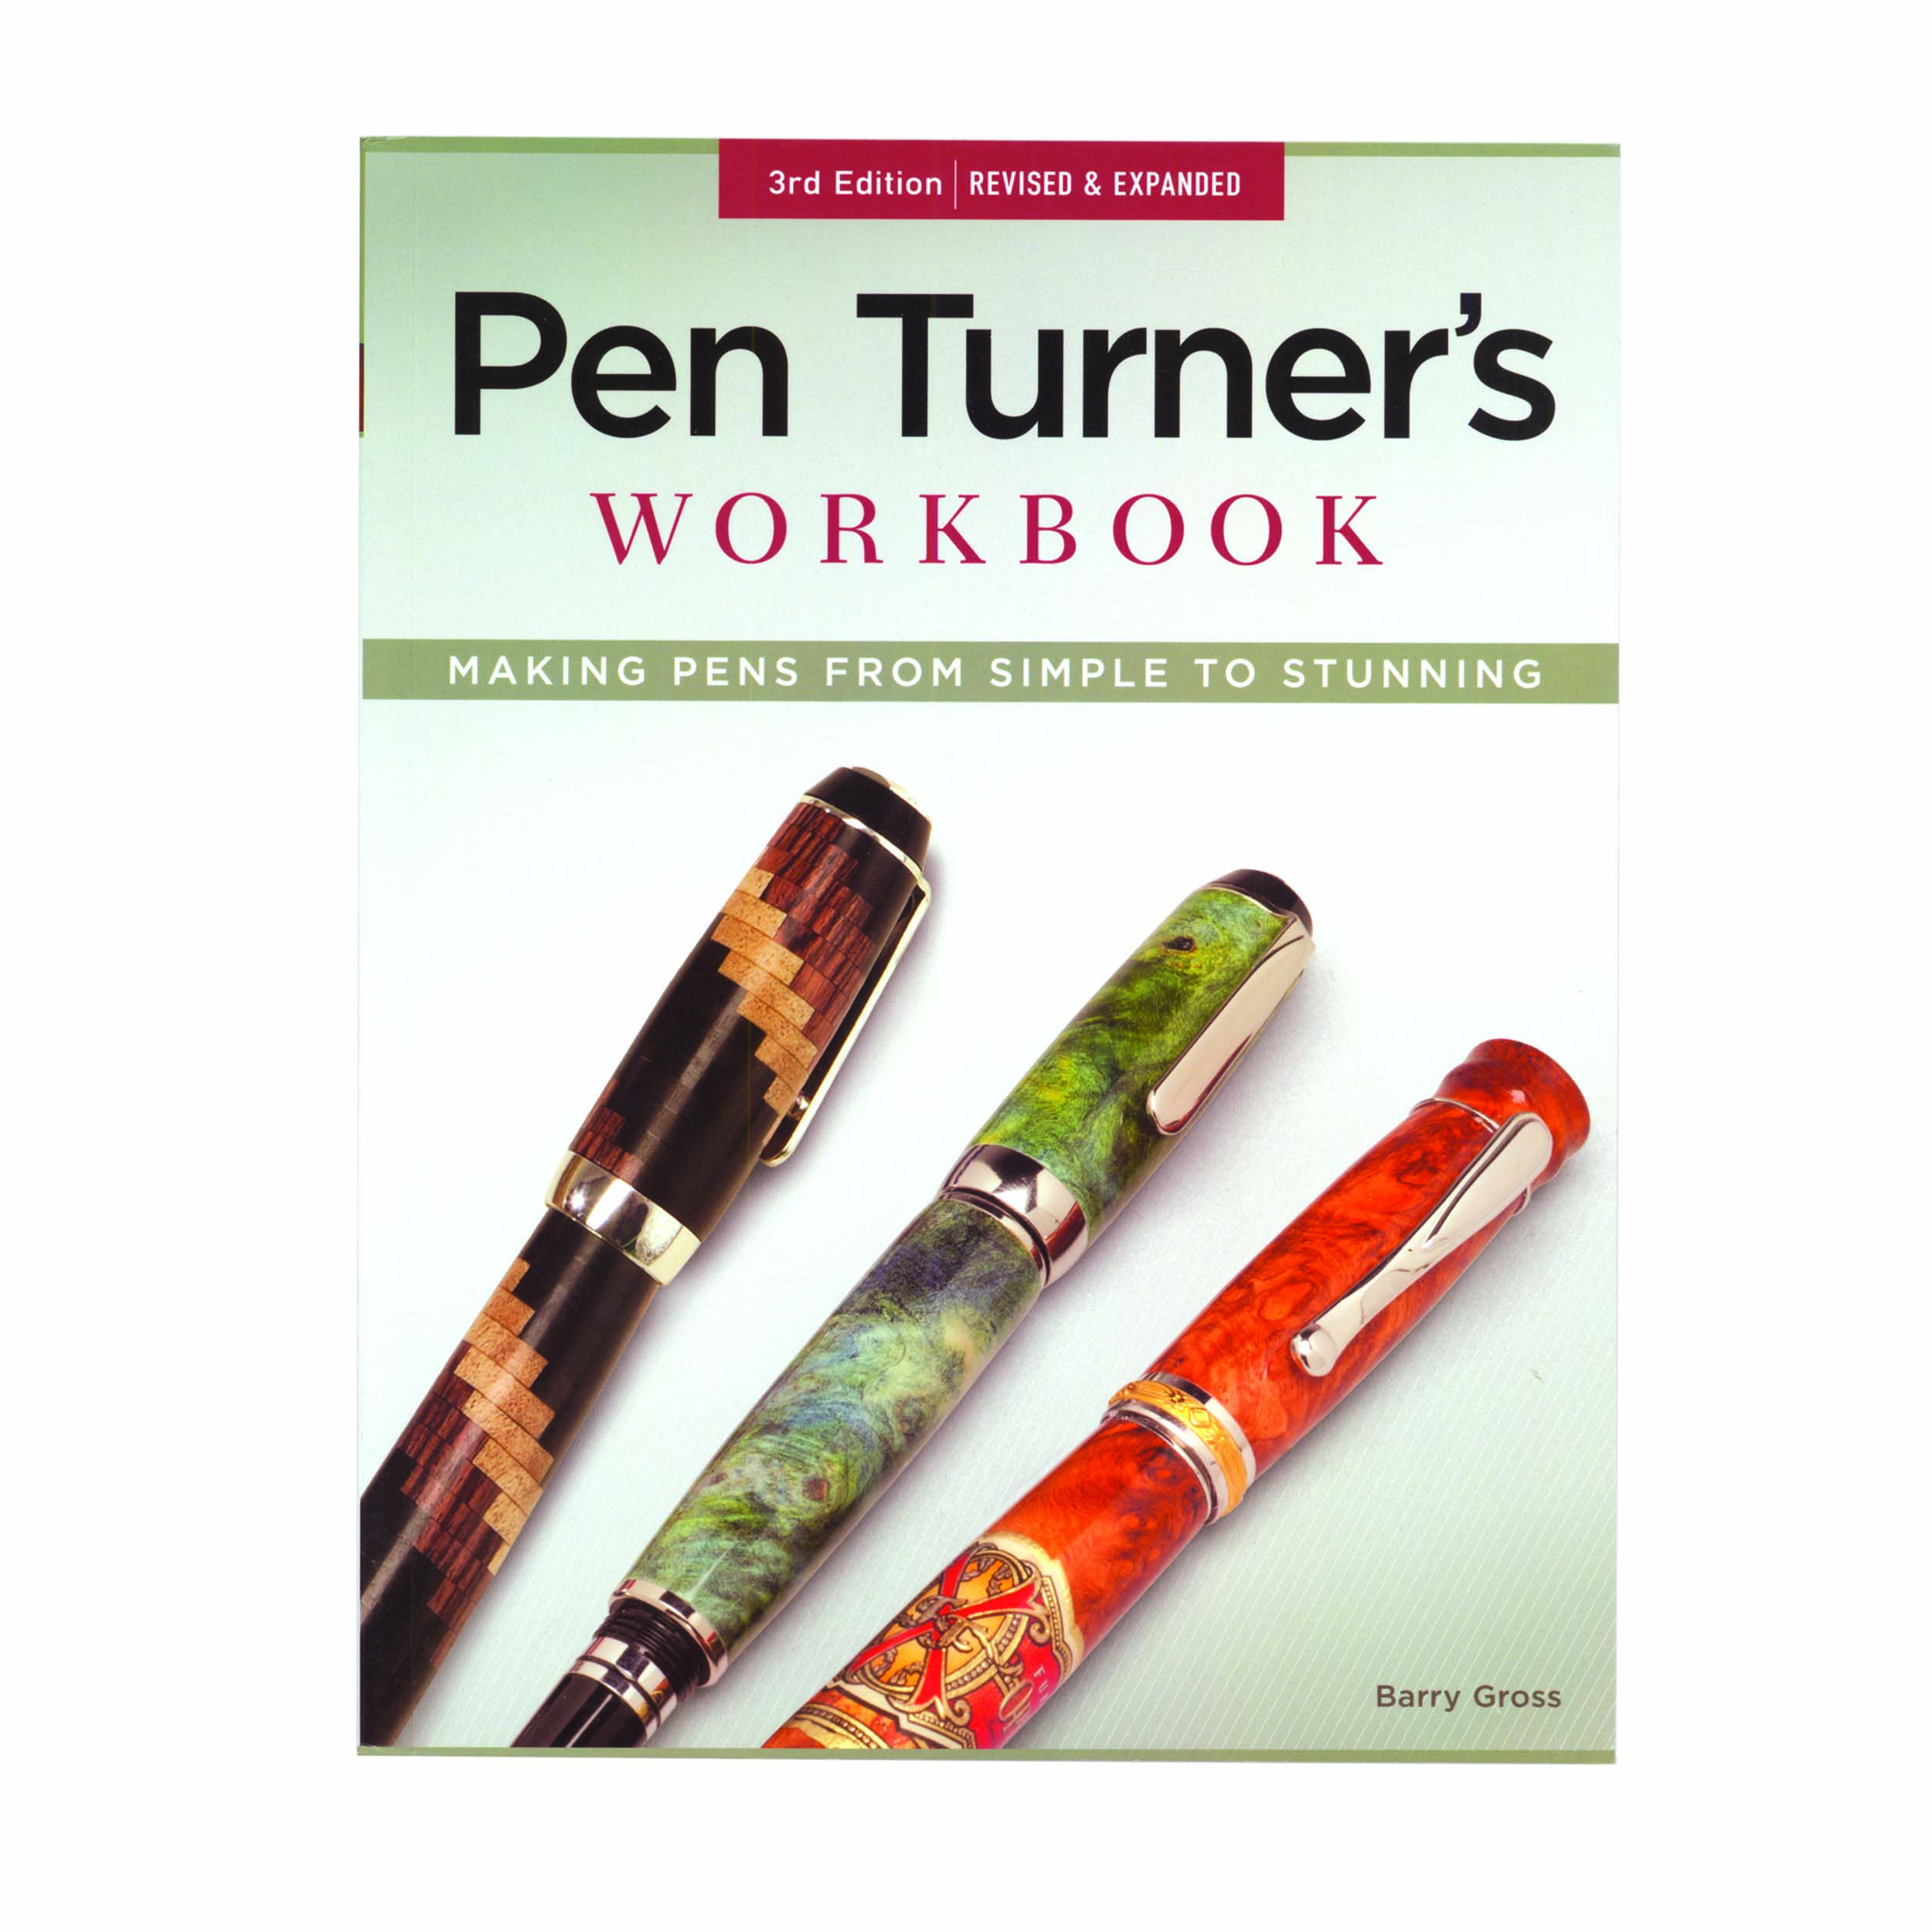 Pen Turner